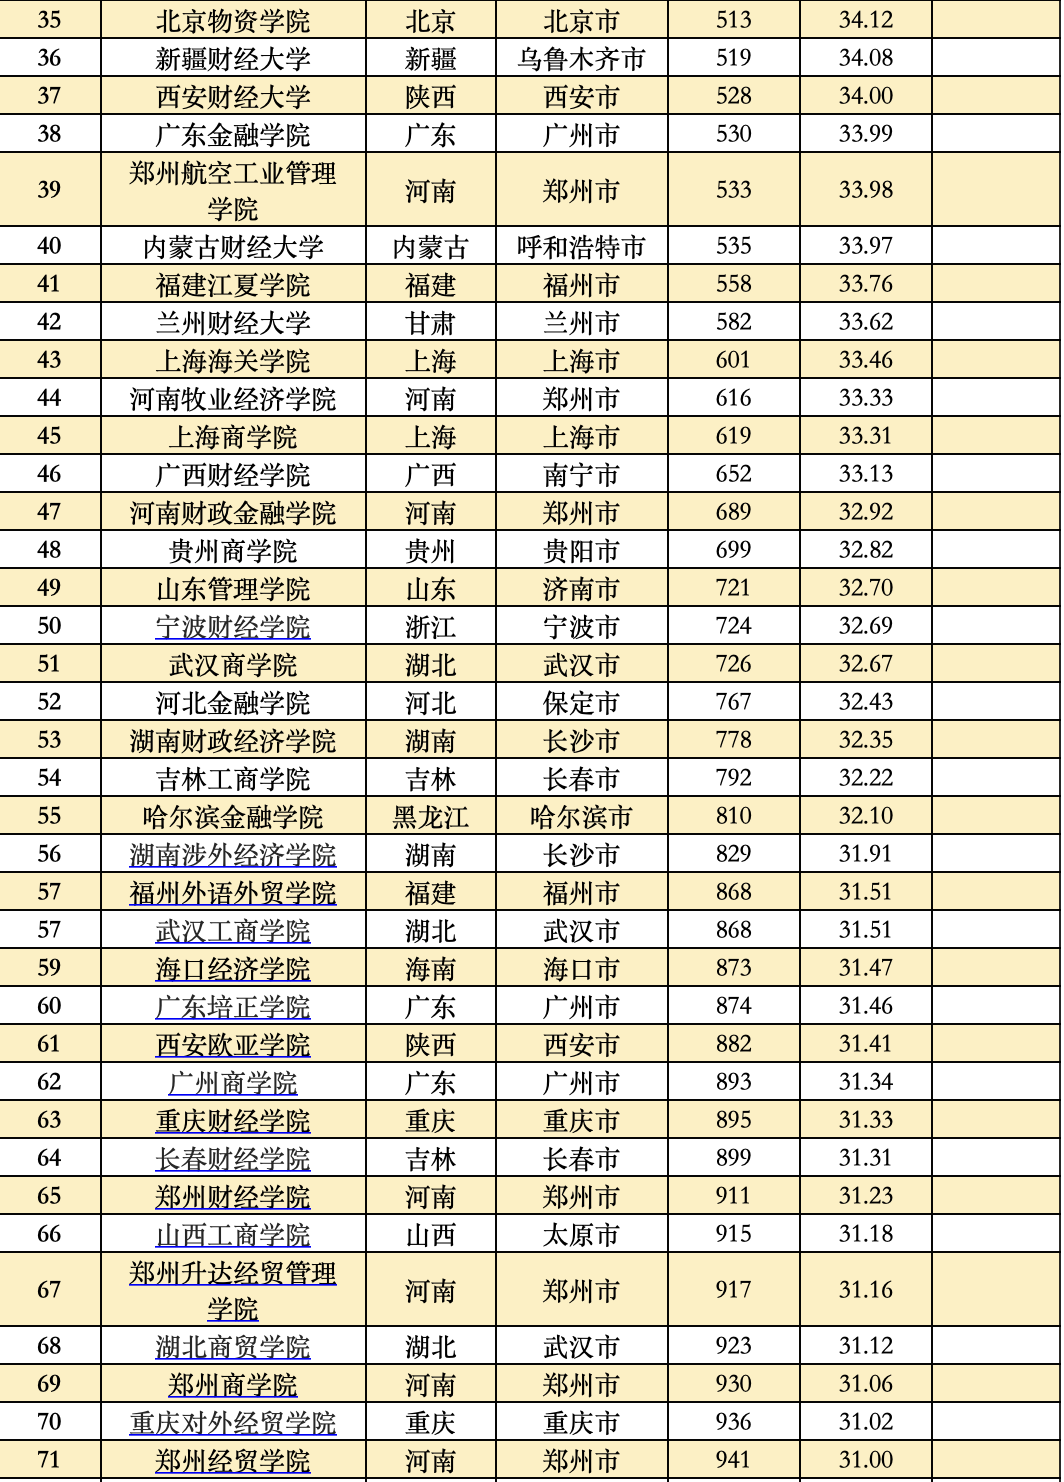 中国各类型高校实力如何？这些大学分别入选TOP20